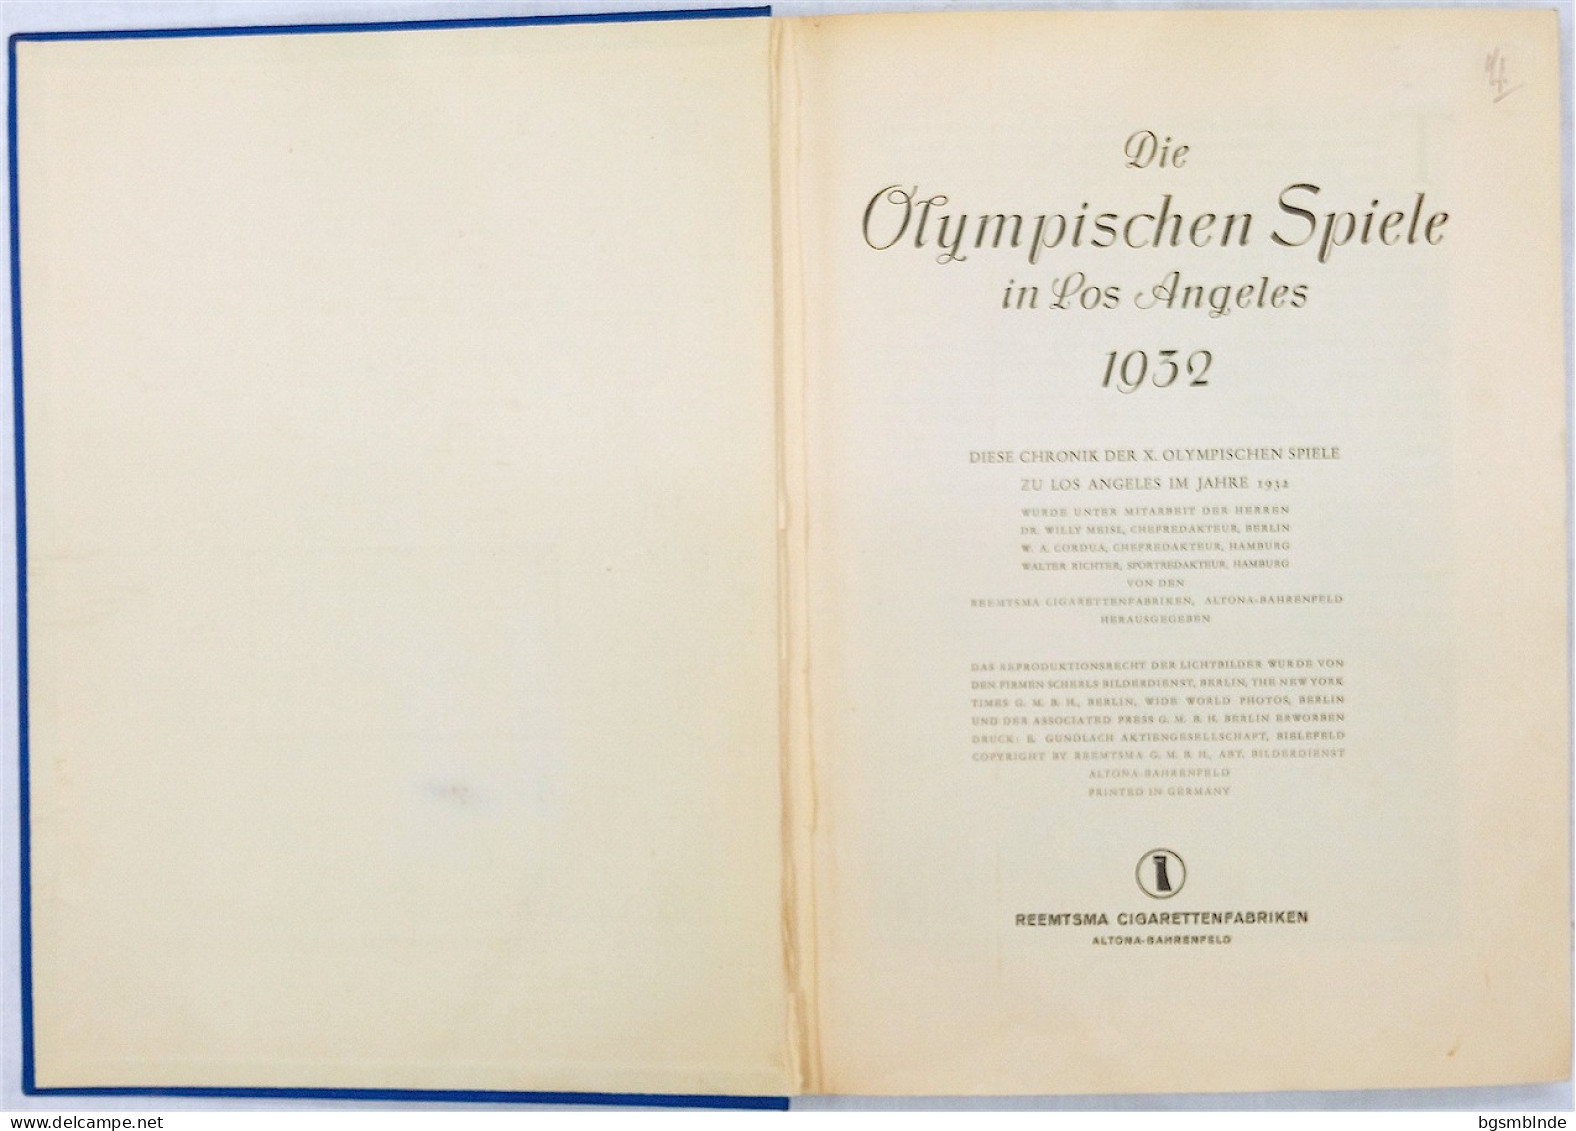 Die Olympischen Spiele 1932 In Los Angeles - Sammel-Bildband Komplett / 142 S. - 24,5x32x2,6cm - Sport